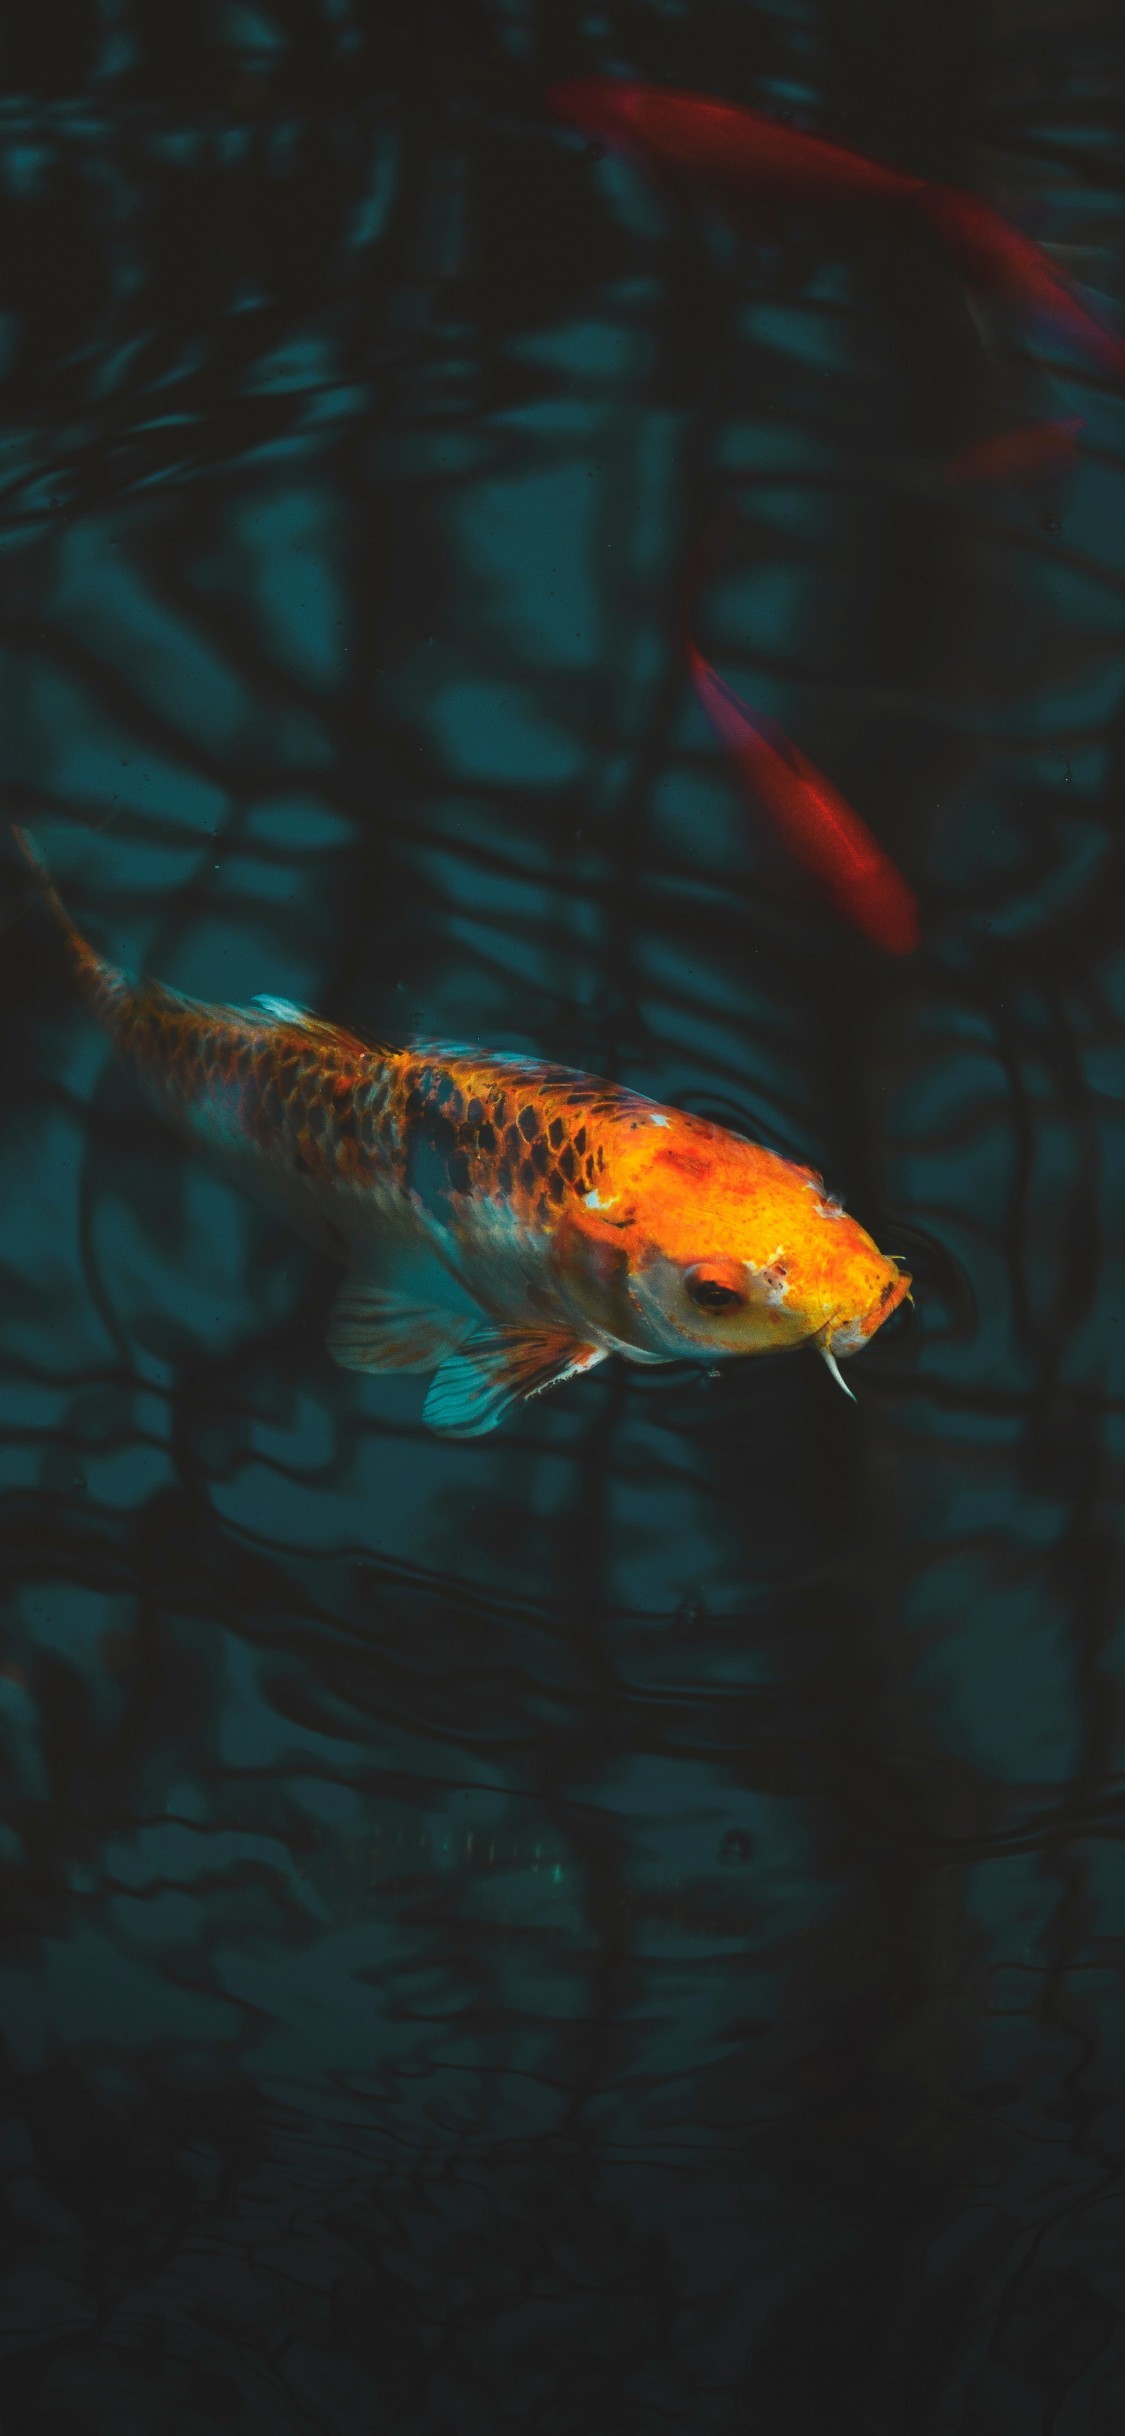 Aquarium Koi Carp Underwater - Koi Fish Wallpaper Hd Iphone - HD Wallpaper 